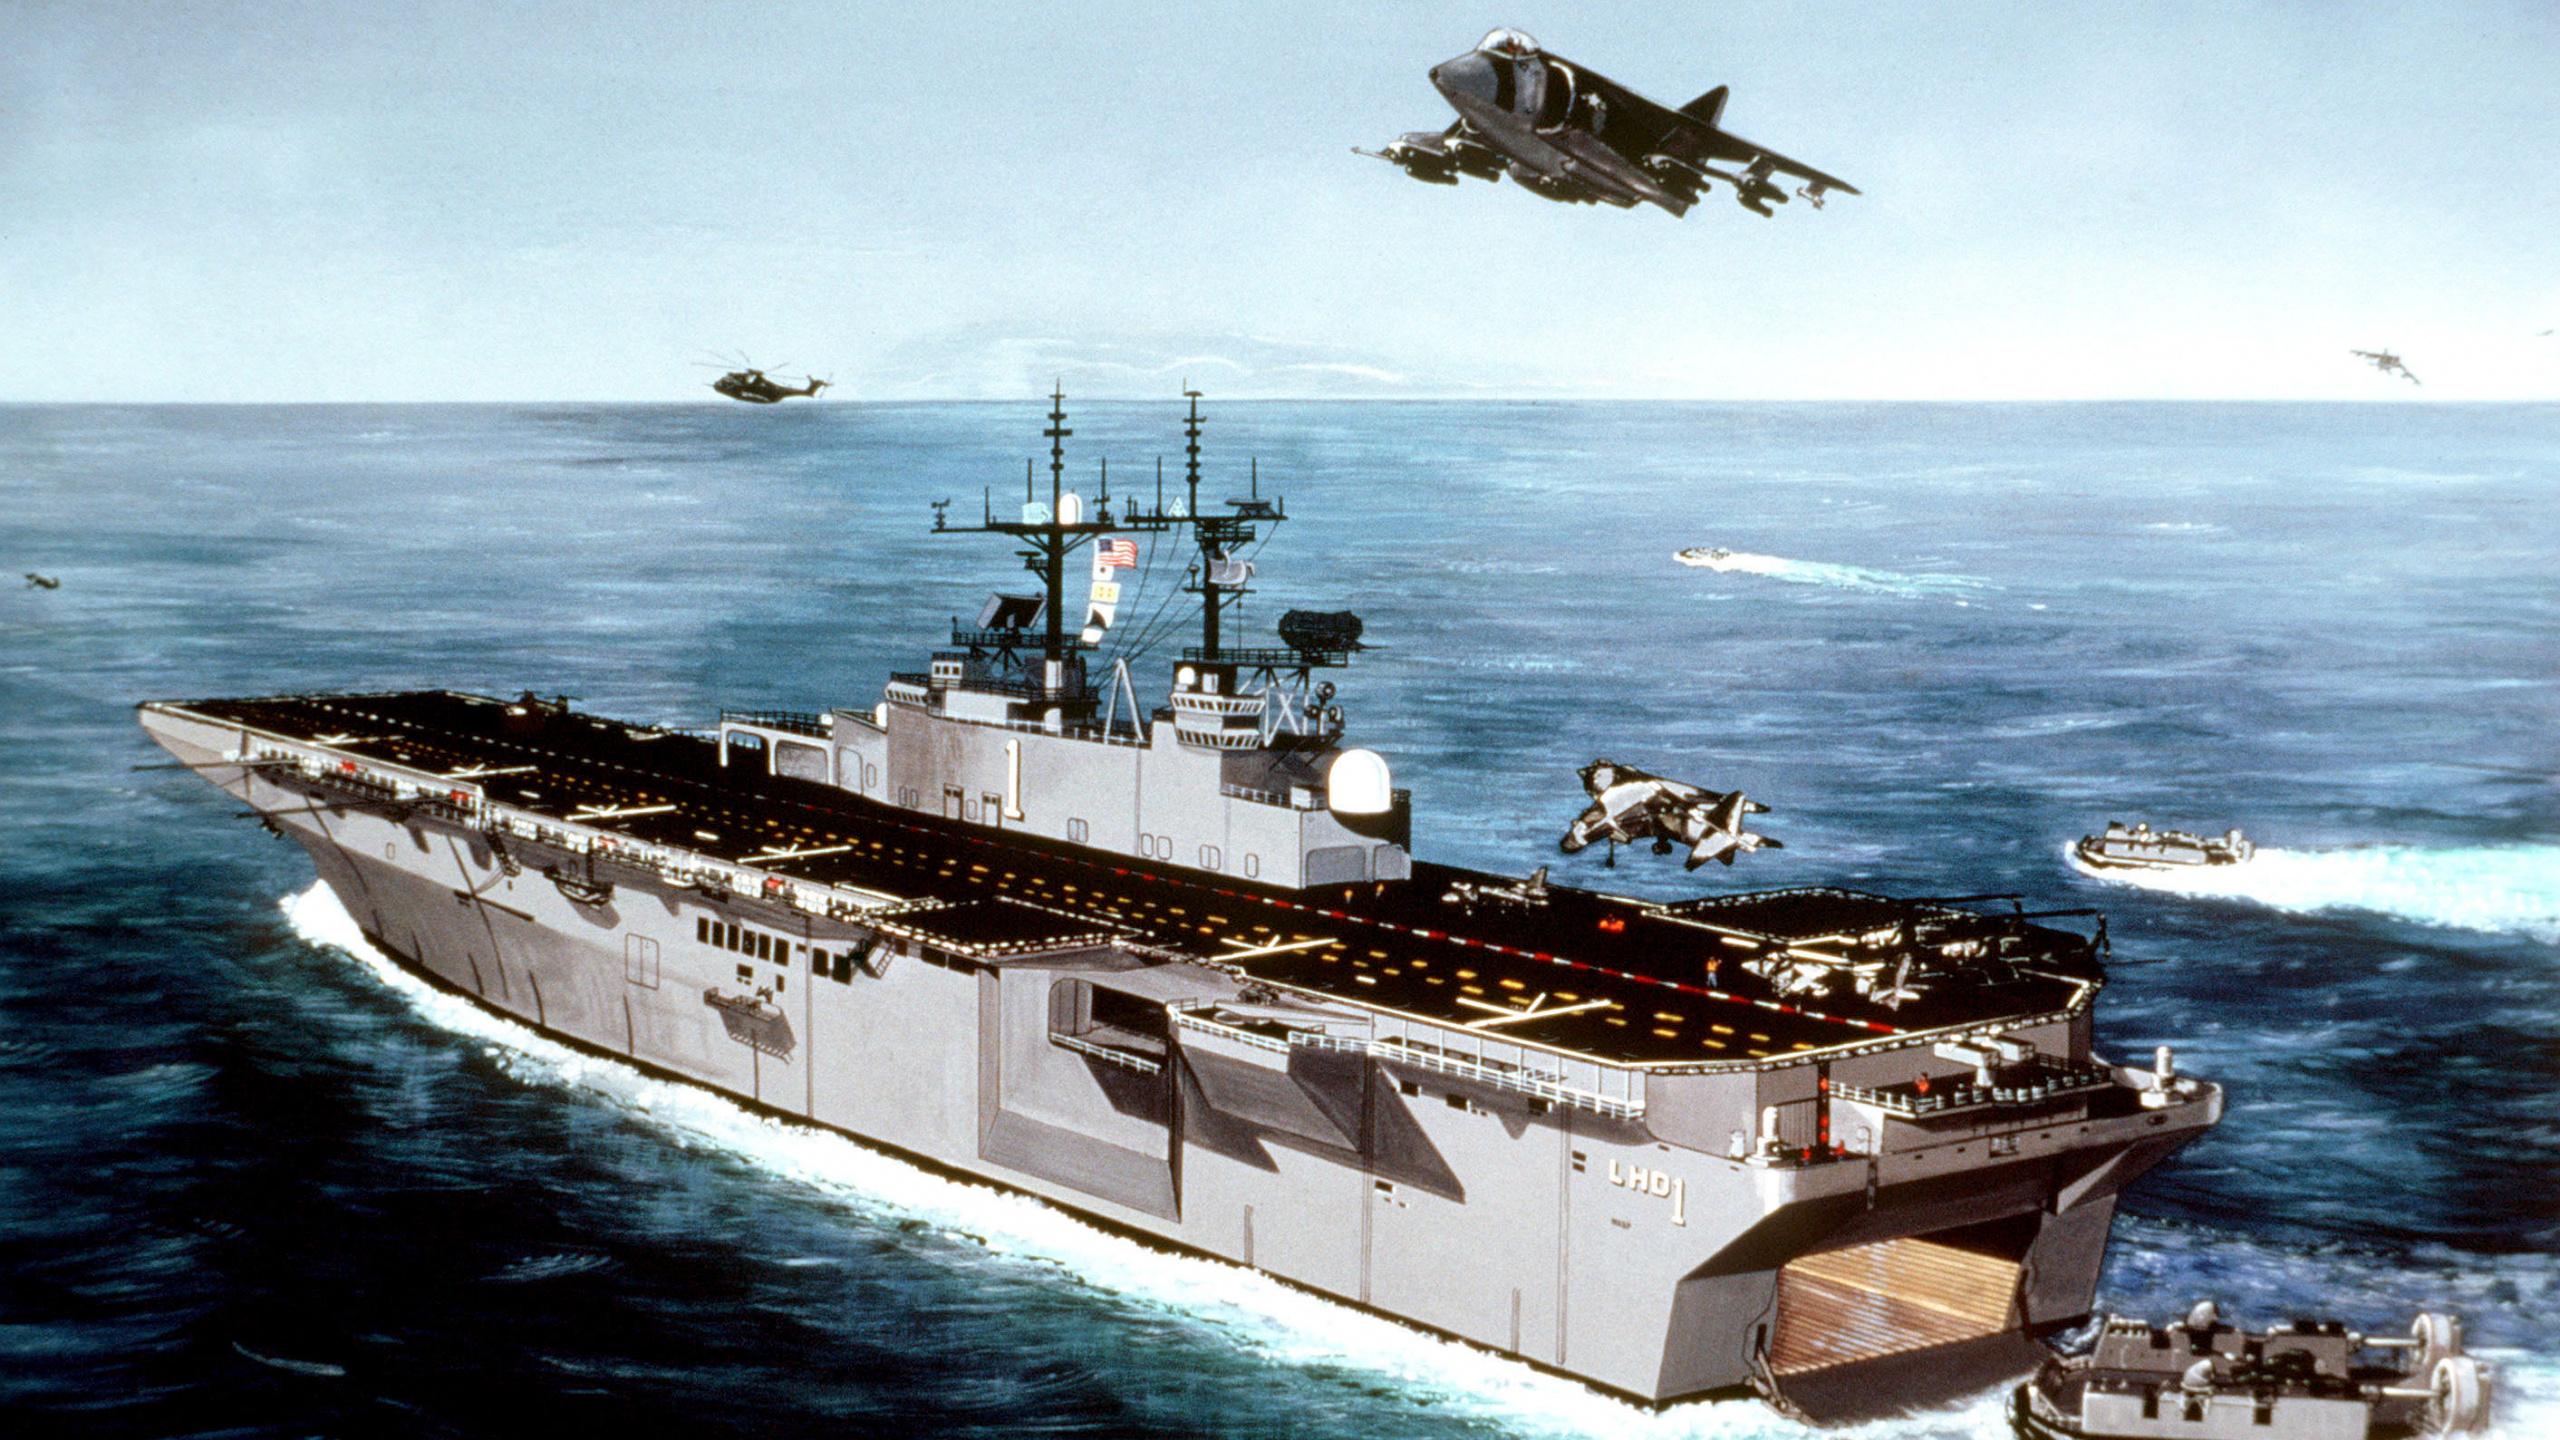 两栖攻击舰, 航空母舰, 海军的船, 军舰, 船只 壁纸 2560x1440 允许